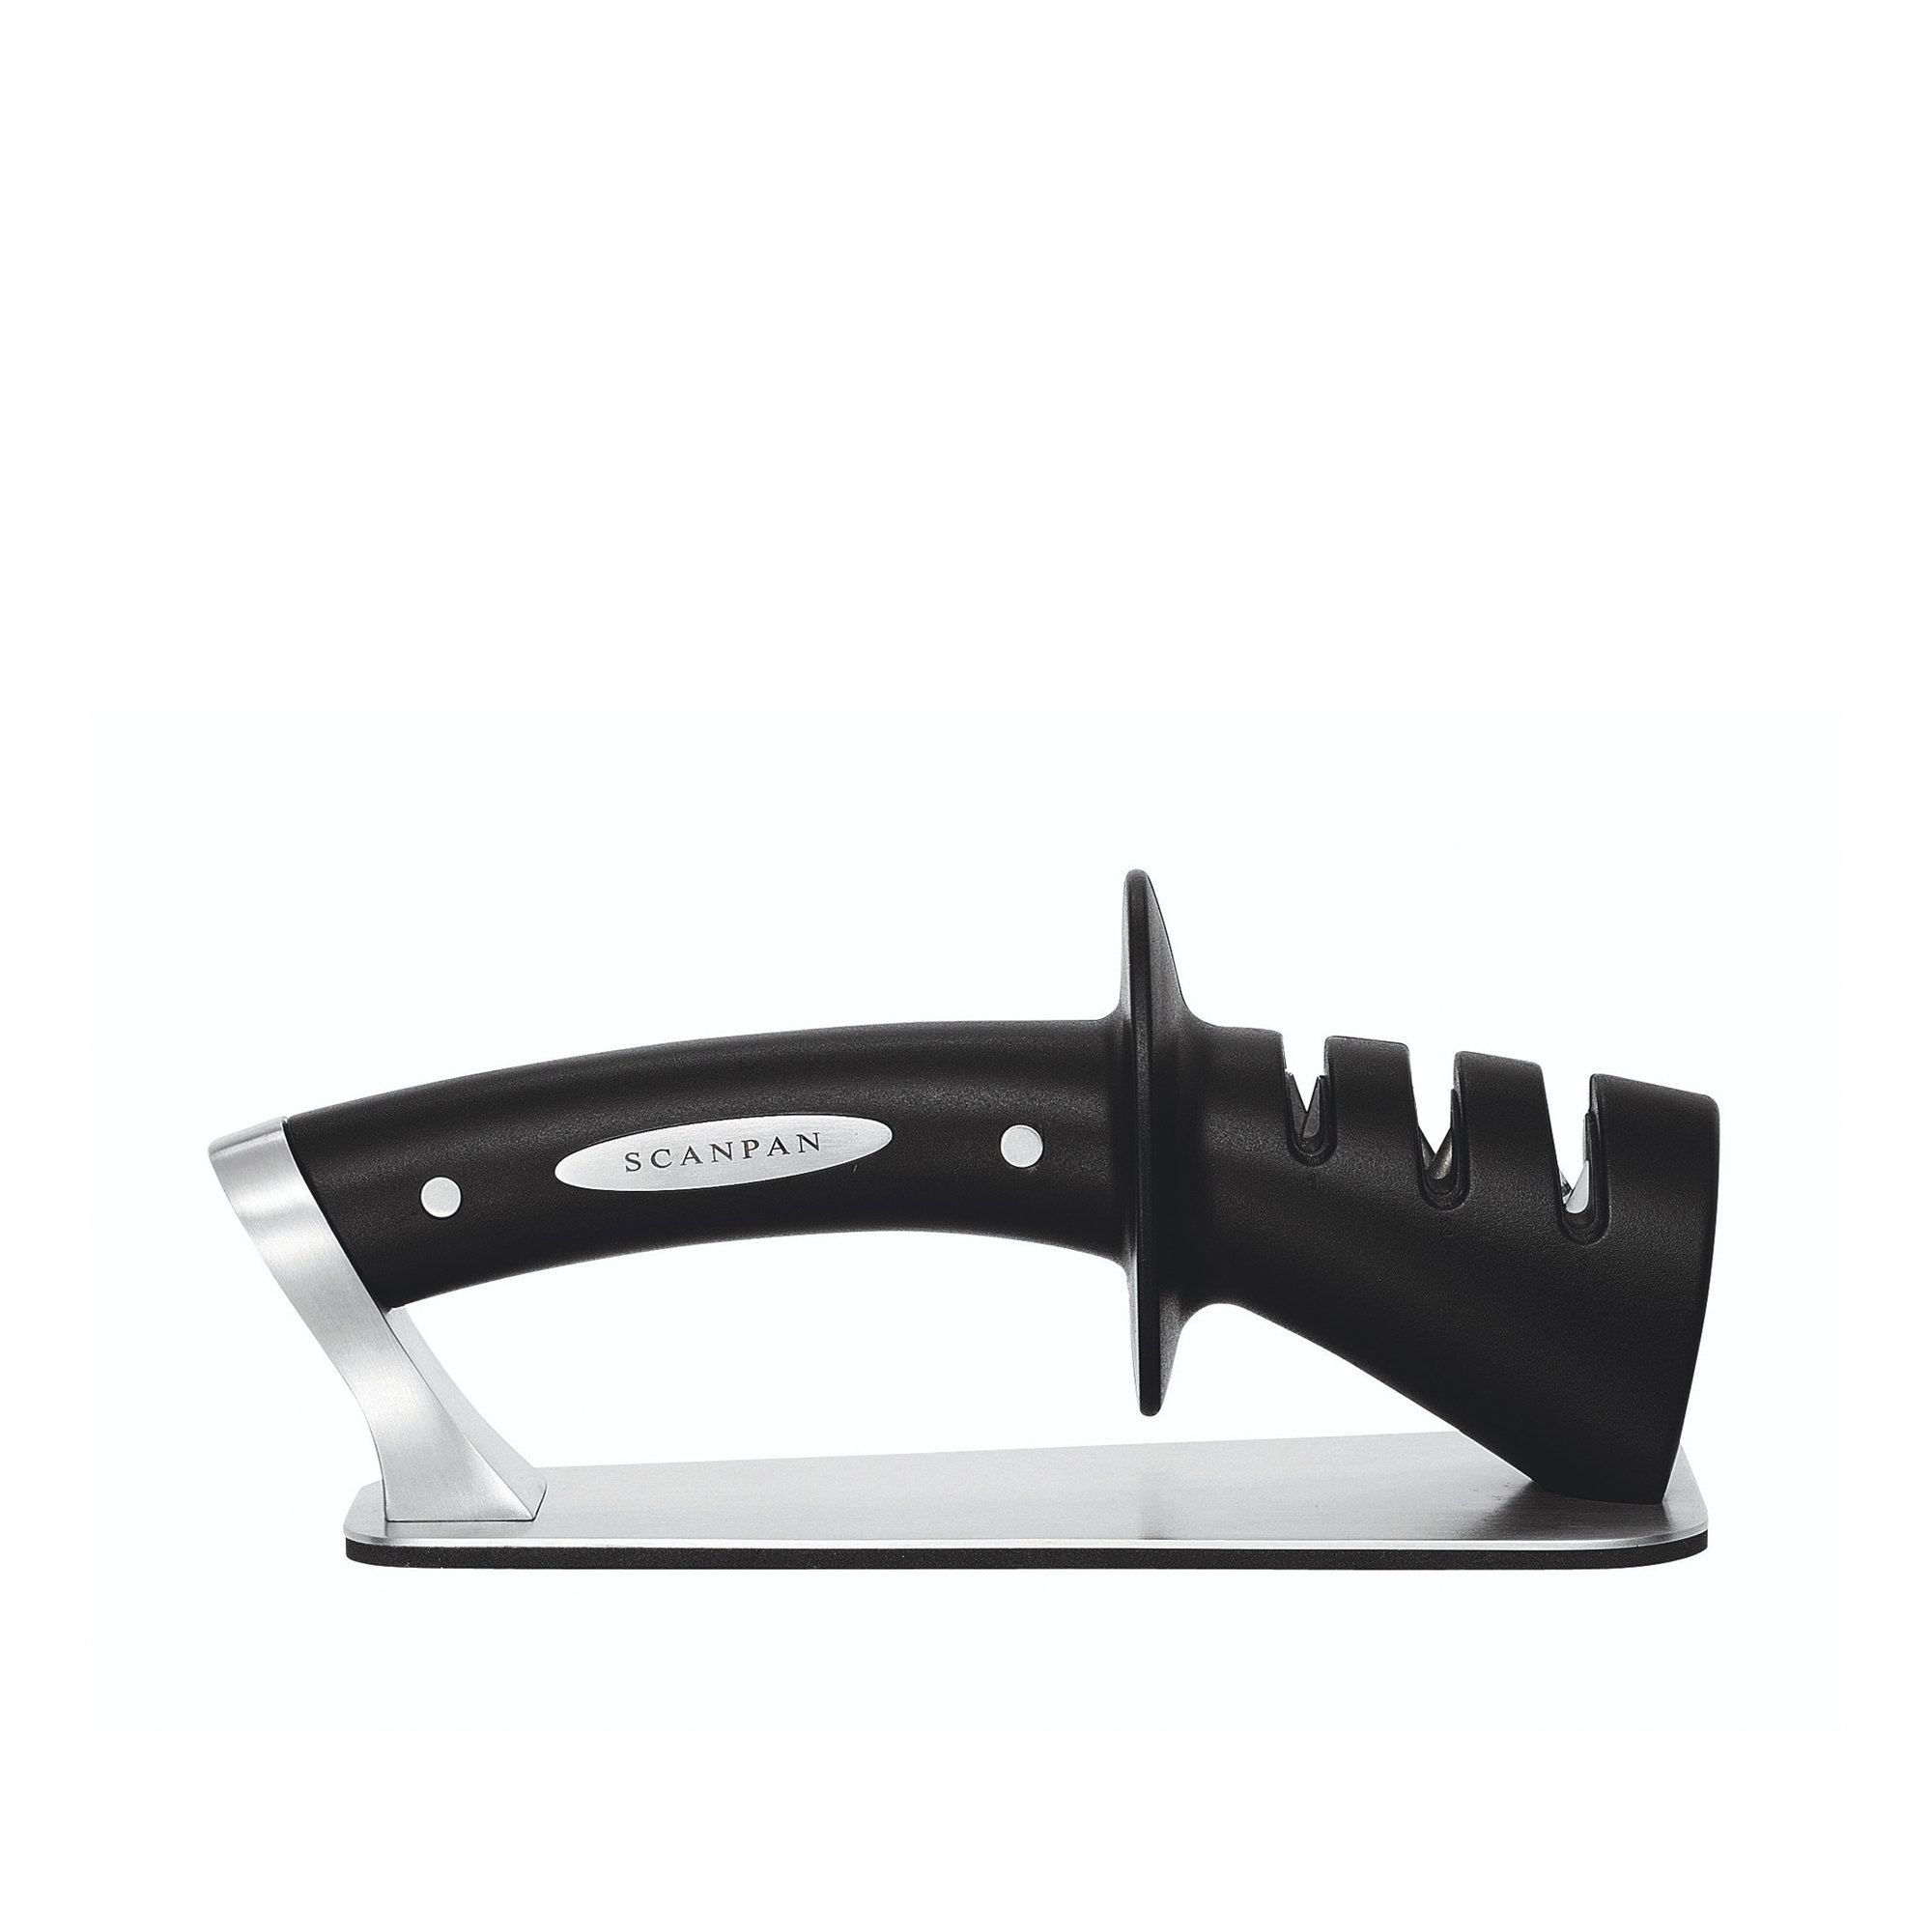 Scanpan 3 Stage Knife Sharpener Image 2